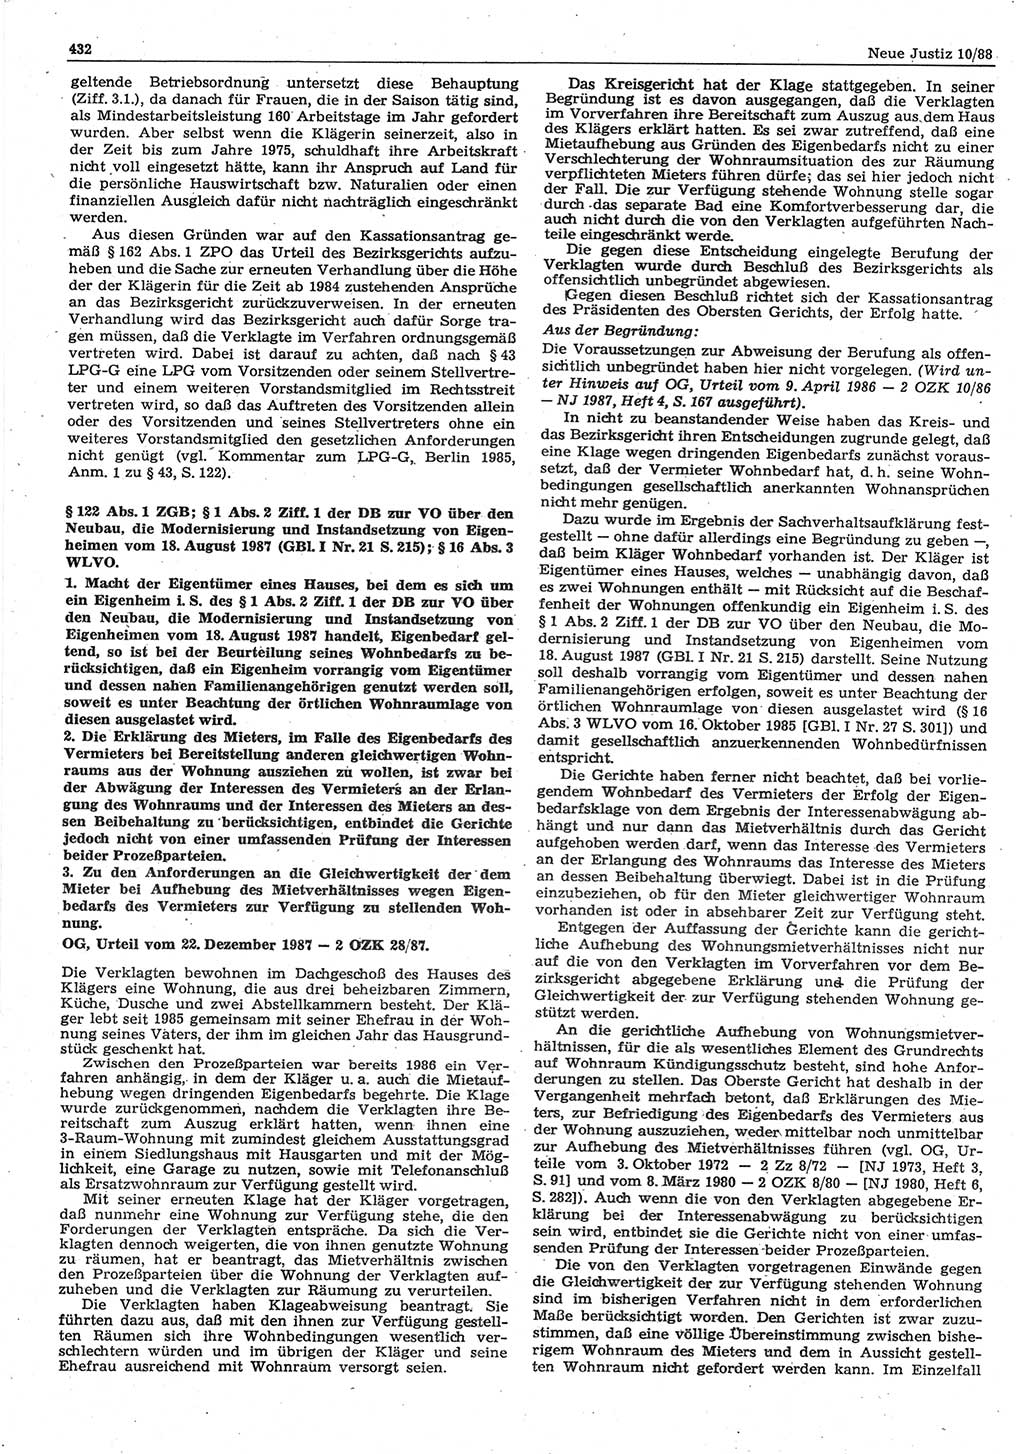 Neue Justiz (NJ), Zeitschrift für sozialistisches Recht und Gesetzlichkeit [Deutsche Demokratische Republik (DDR)], 42. Jahrgang 1988, Seite 432 (NJ DDR 1988, S. 432)